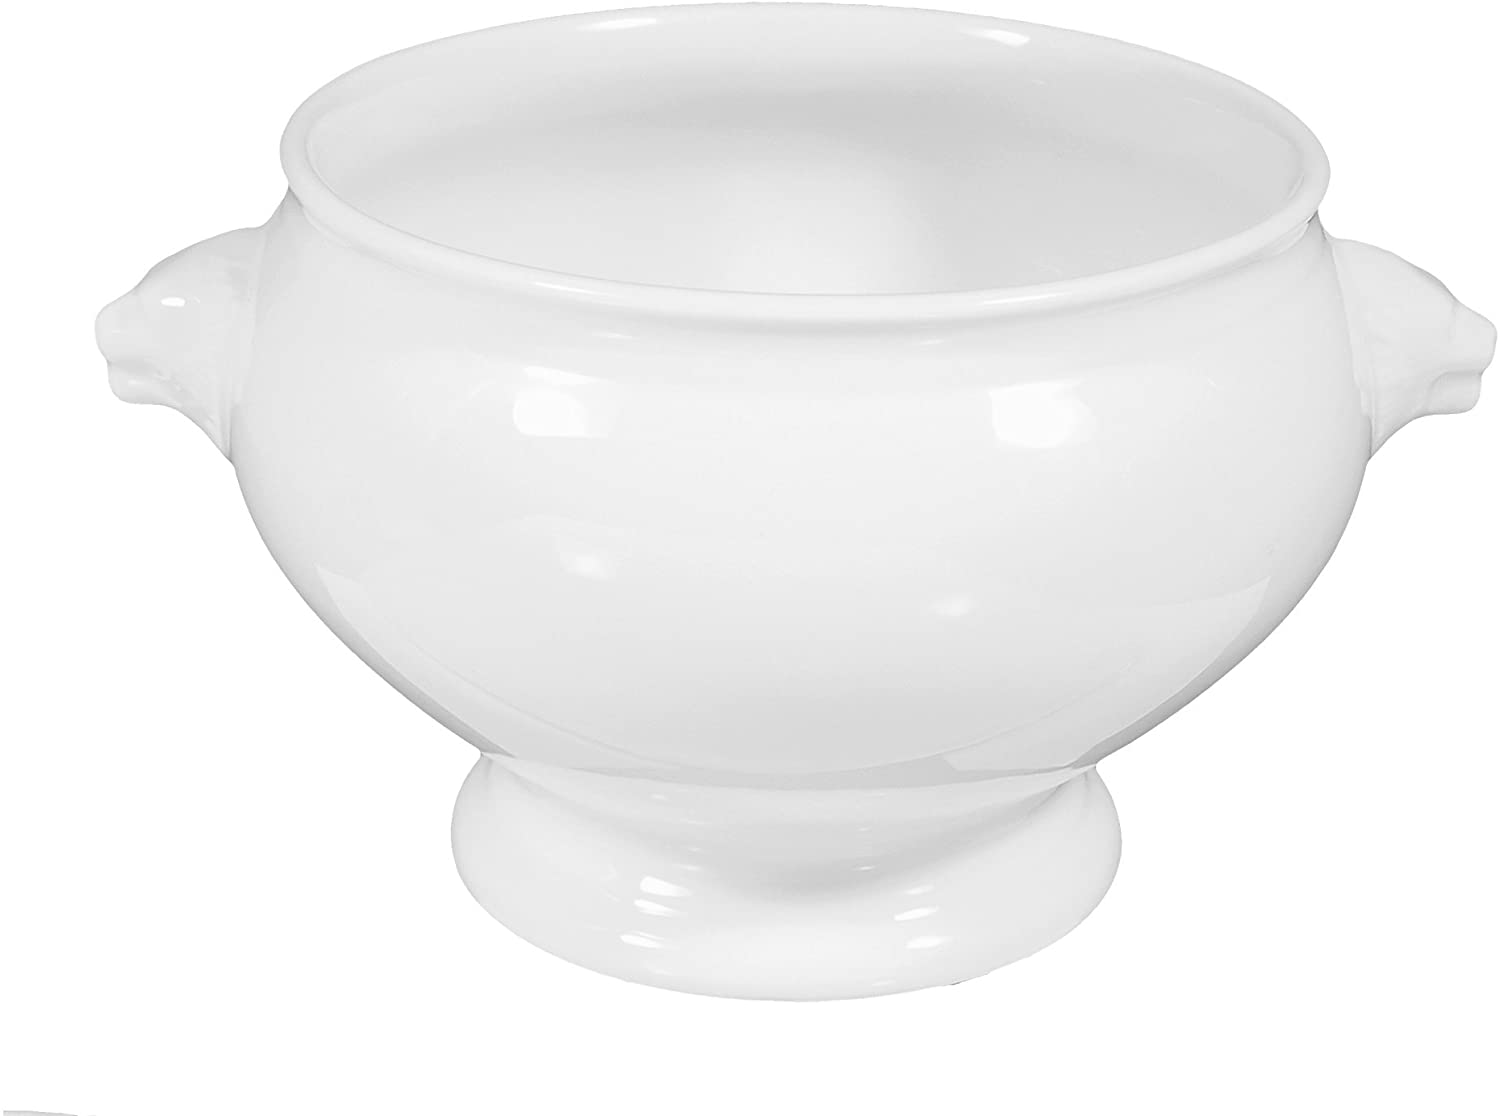 Lukullus Terrine Dish 23.5 cm White Universal 00006 by Seltmann Weiden